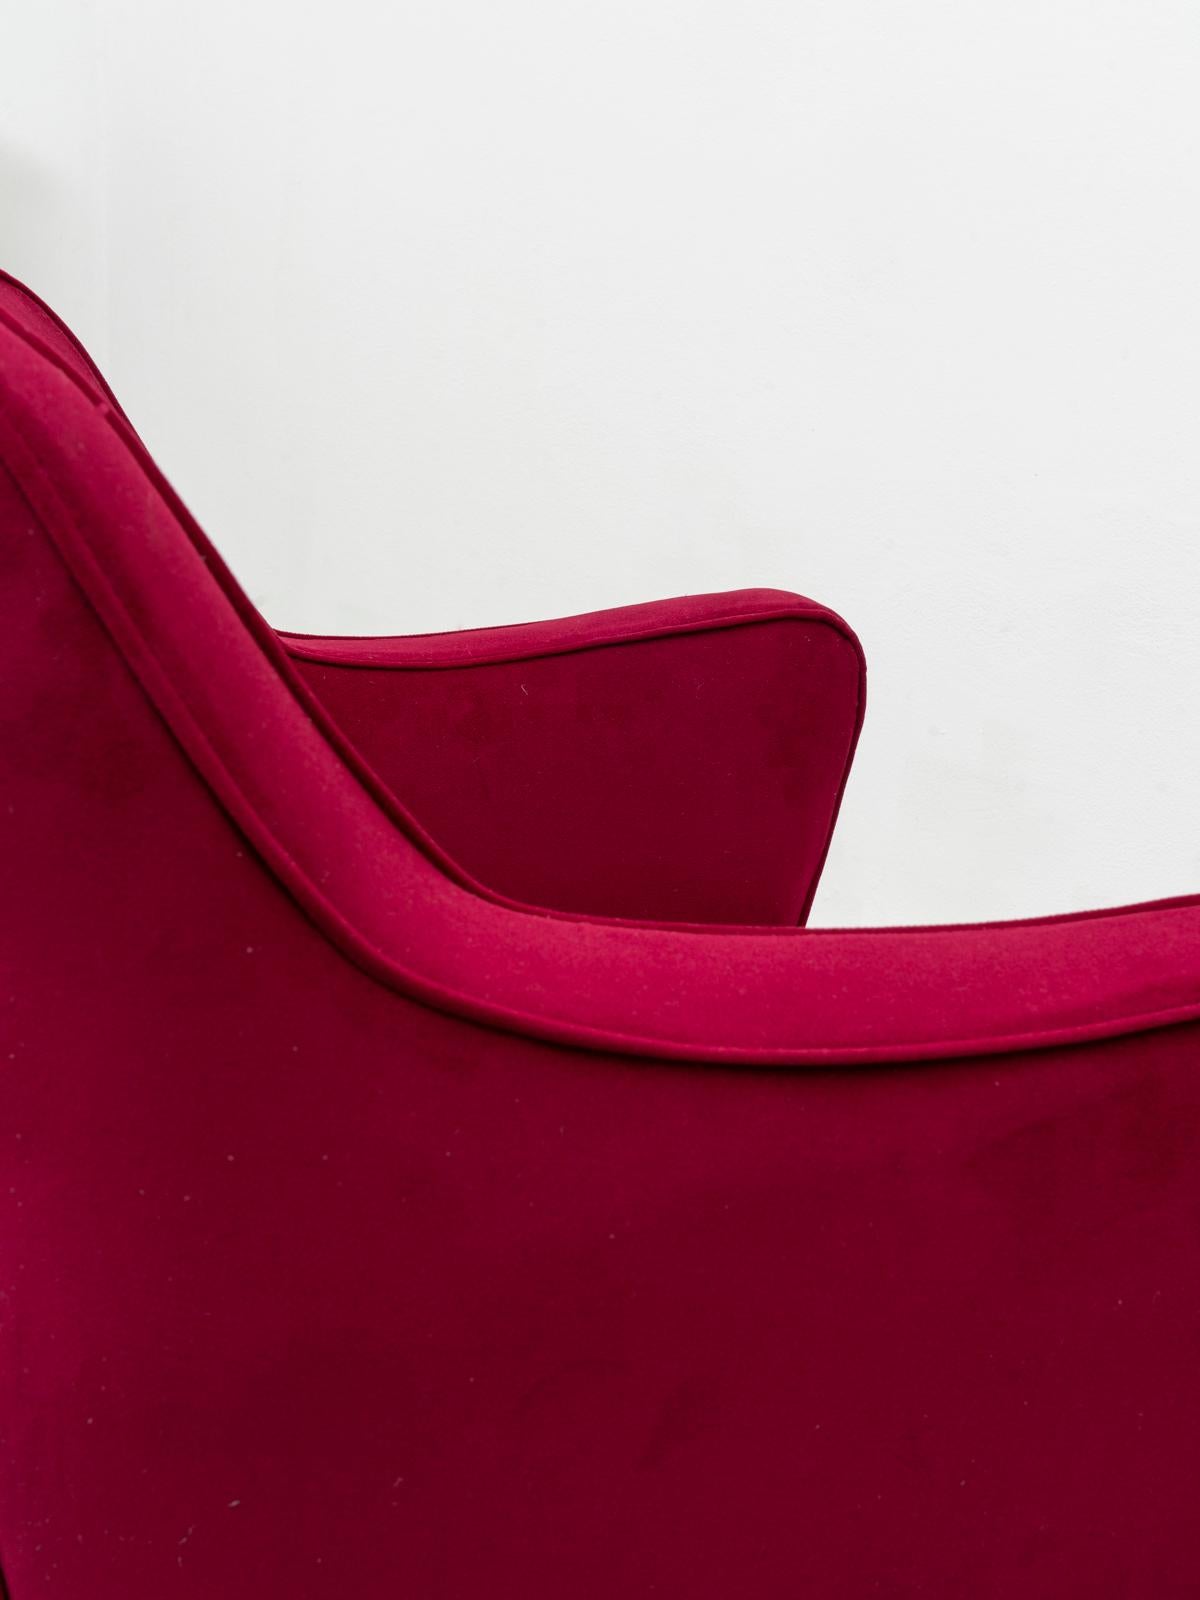 Mid-20th Century Gustavo Putlitzer Finali Pair of Crimson Velvet Midcentury Armchairs for Cassina For Sale